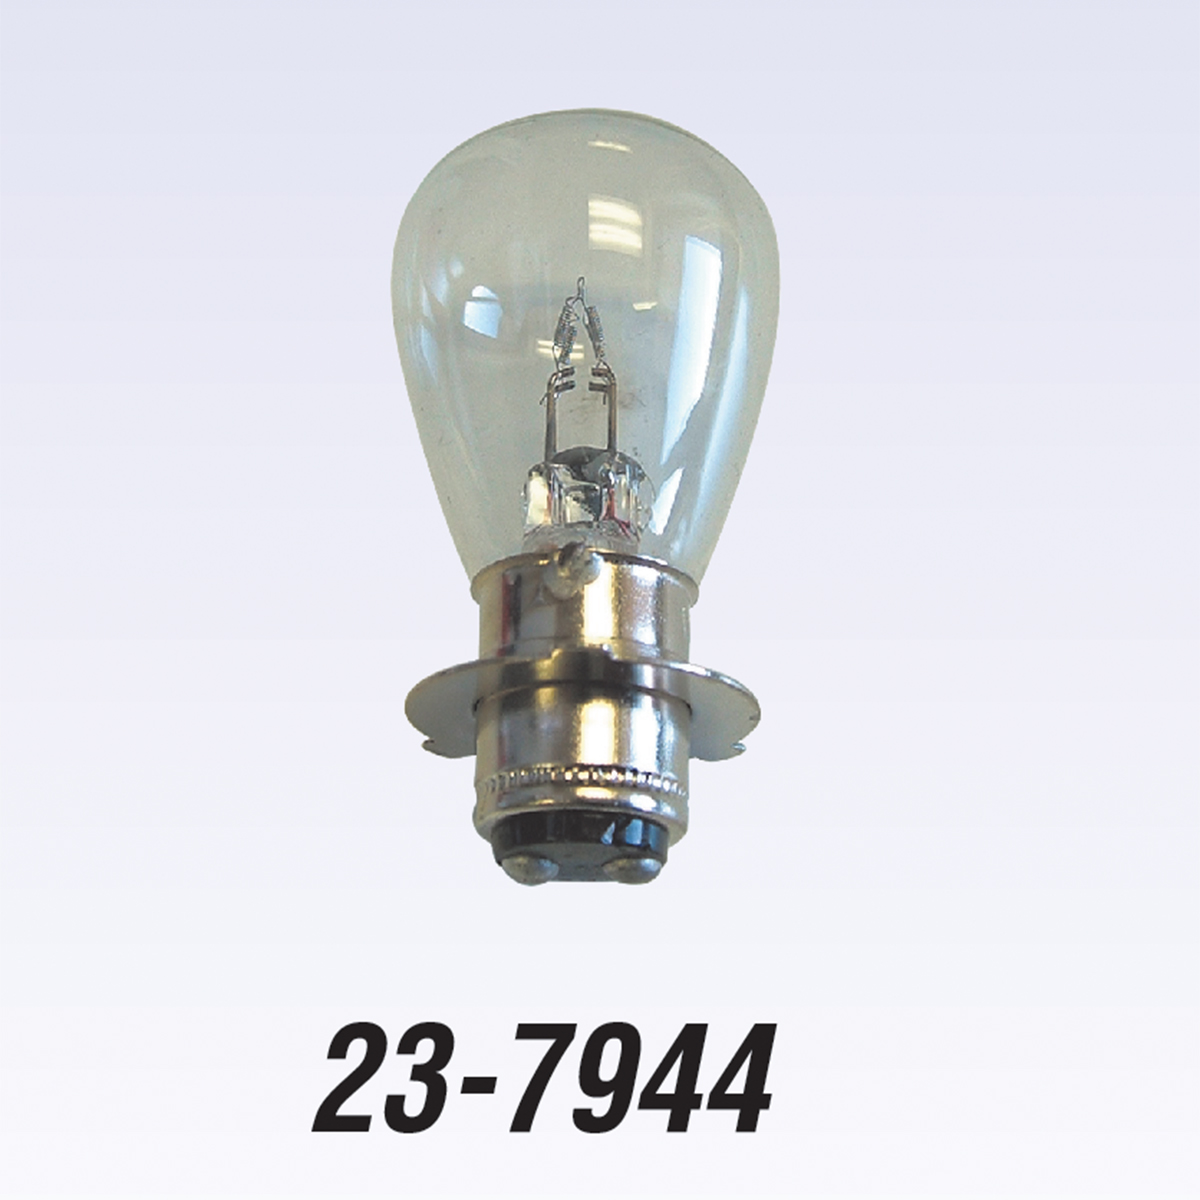 23-7944 Headlight Bulb 12v, Honda - 34901-hc3-003